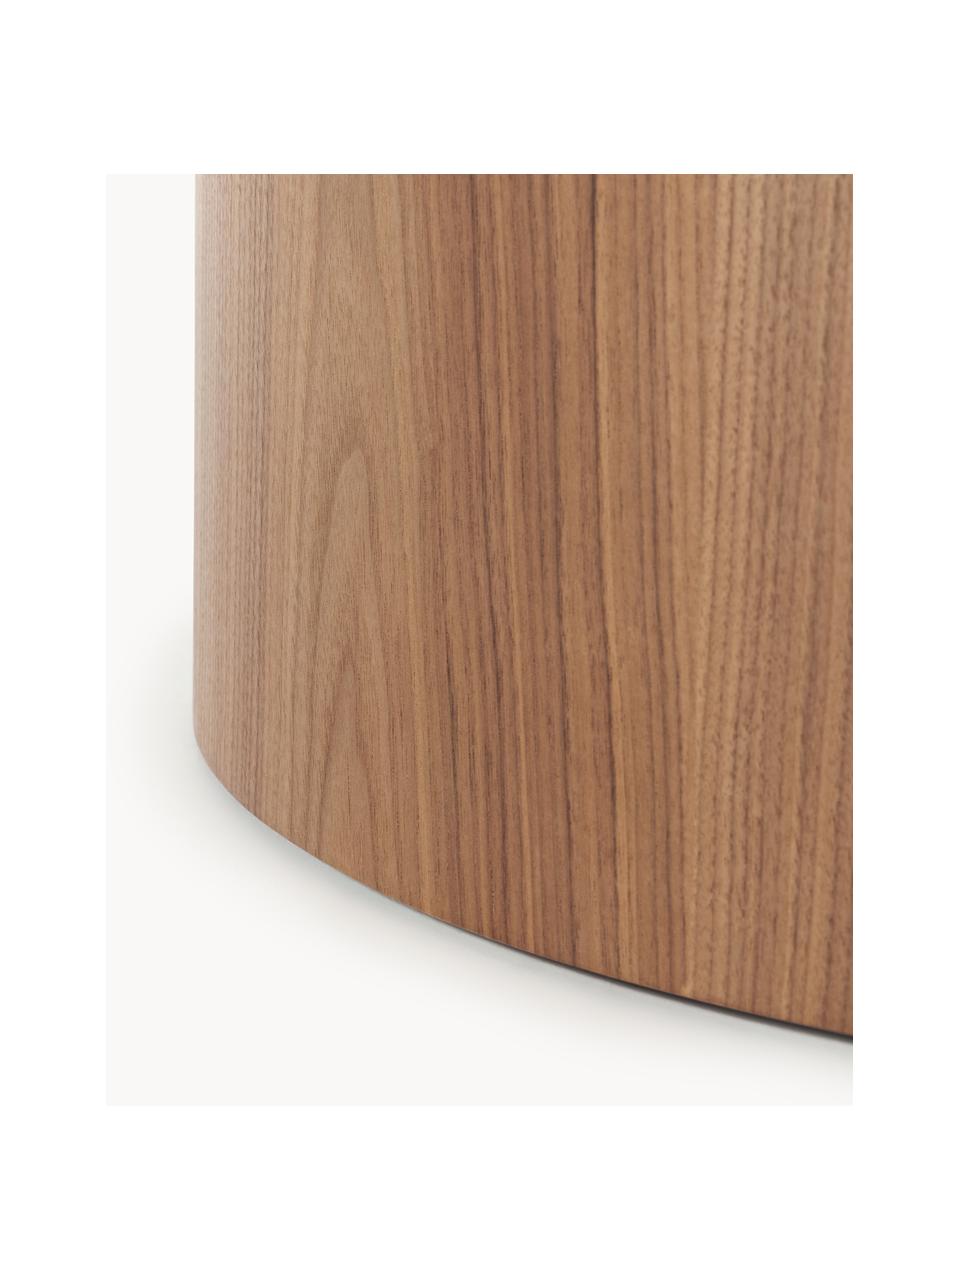 Kulatý dřevěný konferenční stolek Dan, MDF deska (dřevovláknitá deska střední hustoty) s dýhou z ořechu, Ořechové dřevo, Ø 80 cm, V 30 cm